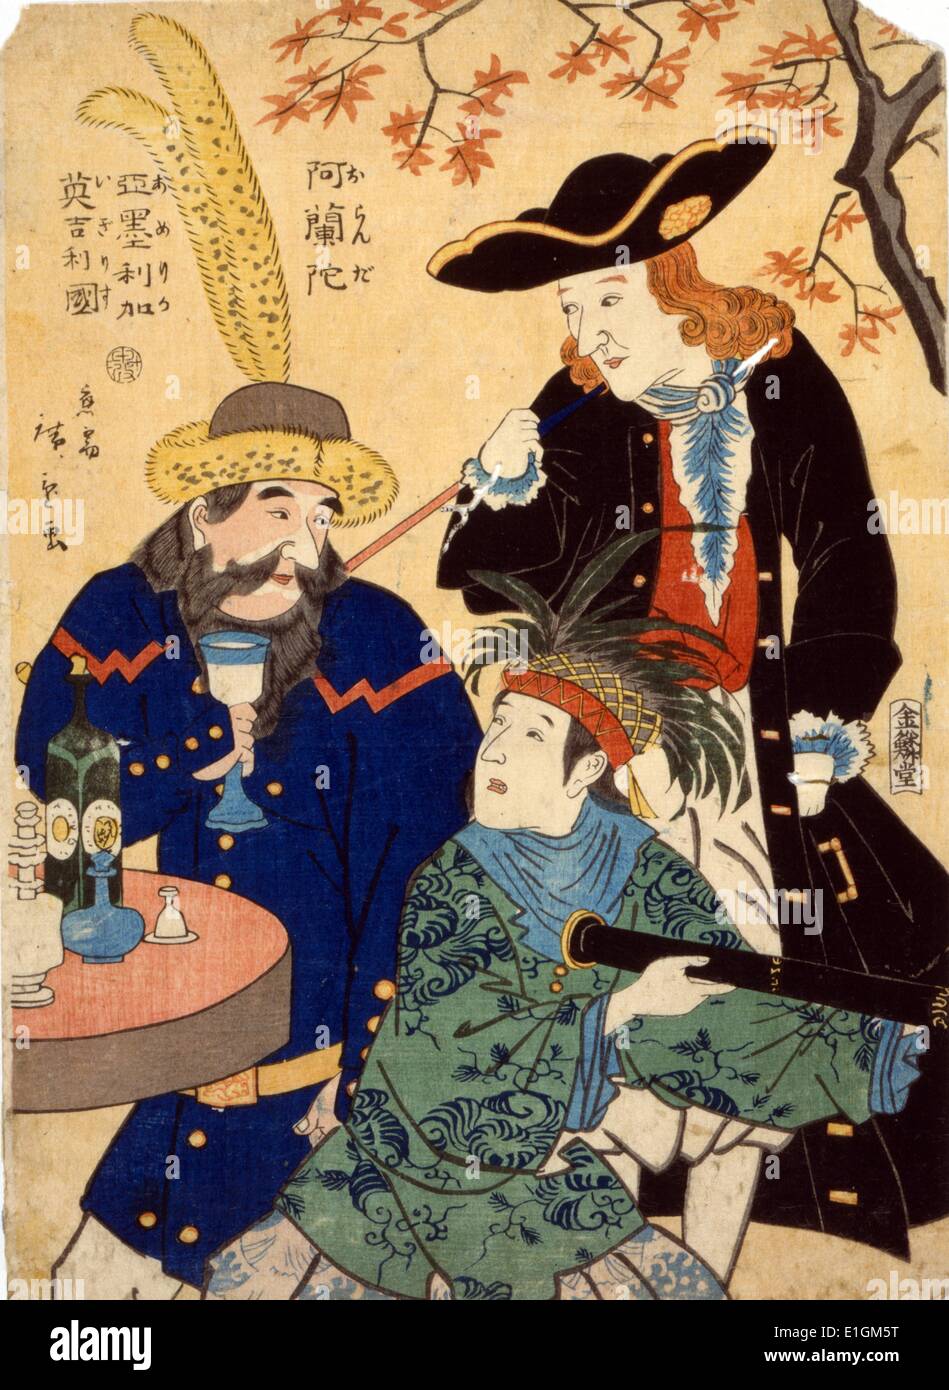 Oranda, Amerika, Igirisu (Niederländisch, Amerikanisch, englisch) von Utagawa Hiroshige 1826?-1869, veröffentlicht 1860. Japanische Drucken zeigt drei Männer um einen Tisch versammelt: eine niederländische Mann mit einem dreispitz Hut und halten ein Rohr, ein englischer Mann aus einem Glas trinkt, und einer amerikanischen Federkopfschmuck tragen und halten ein Teleskop. Stockfoto